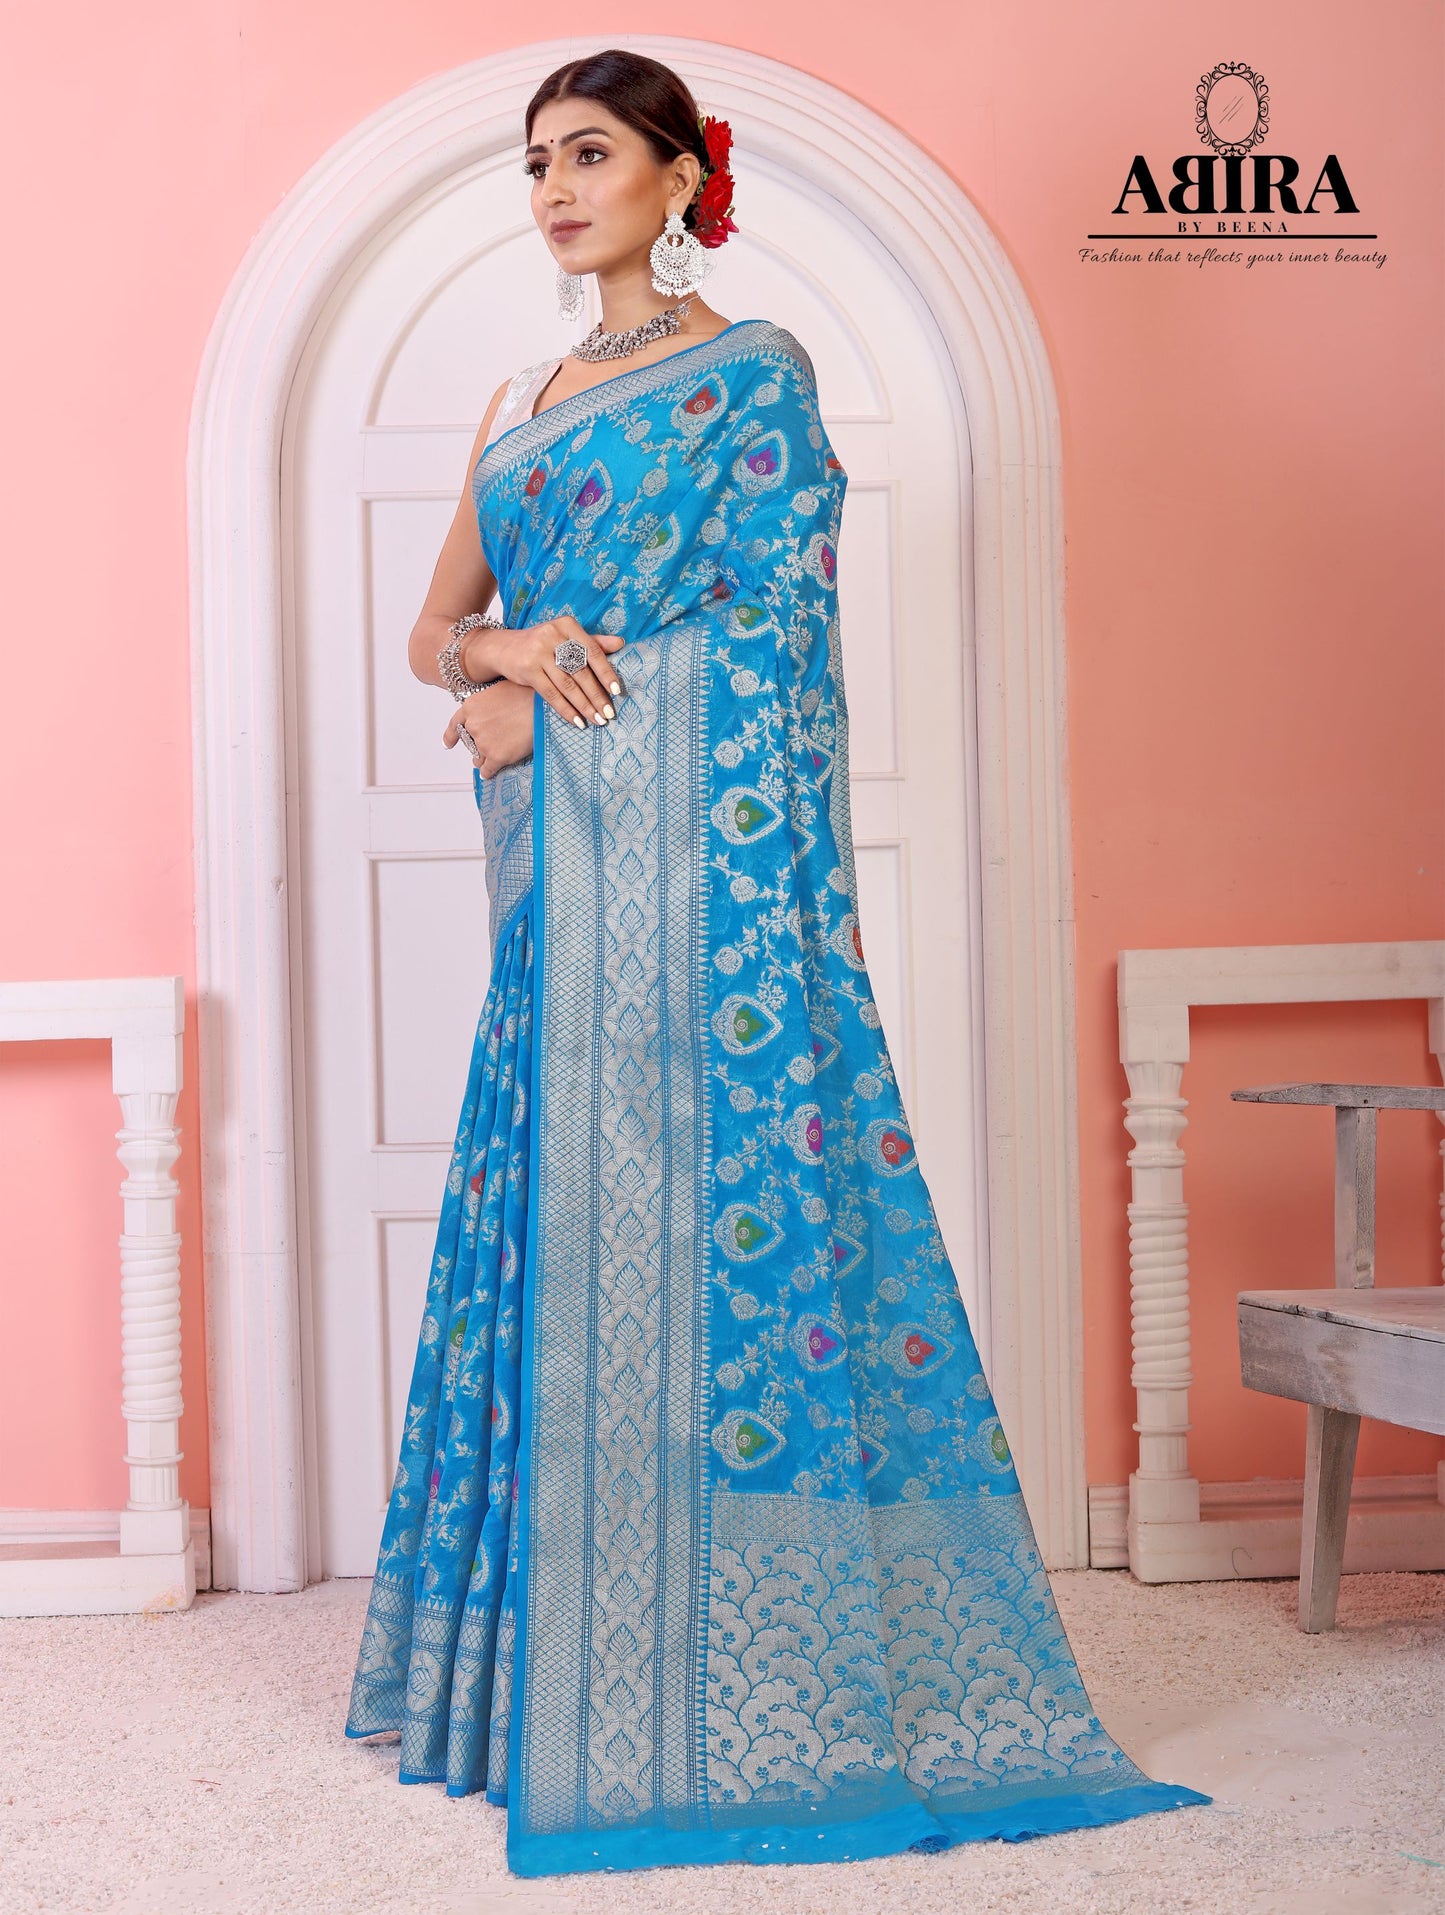 Sky Blue Banaras Soft Georgette Jaal silk - AbirabyBeena